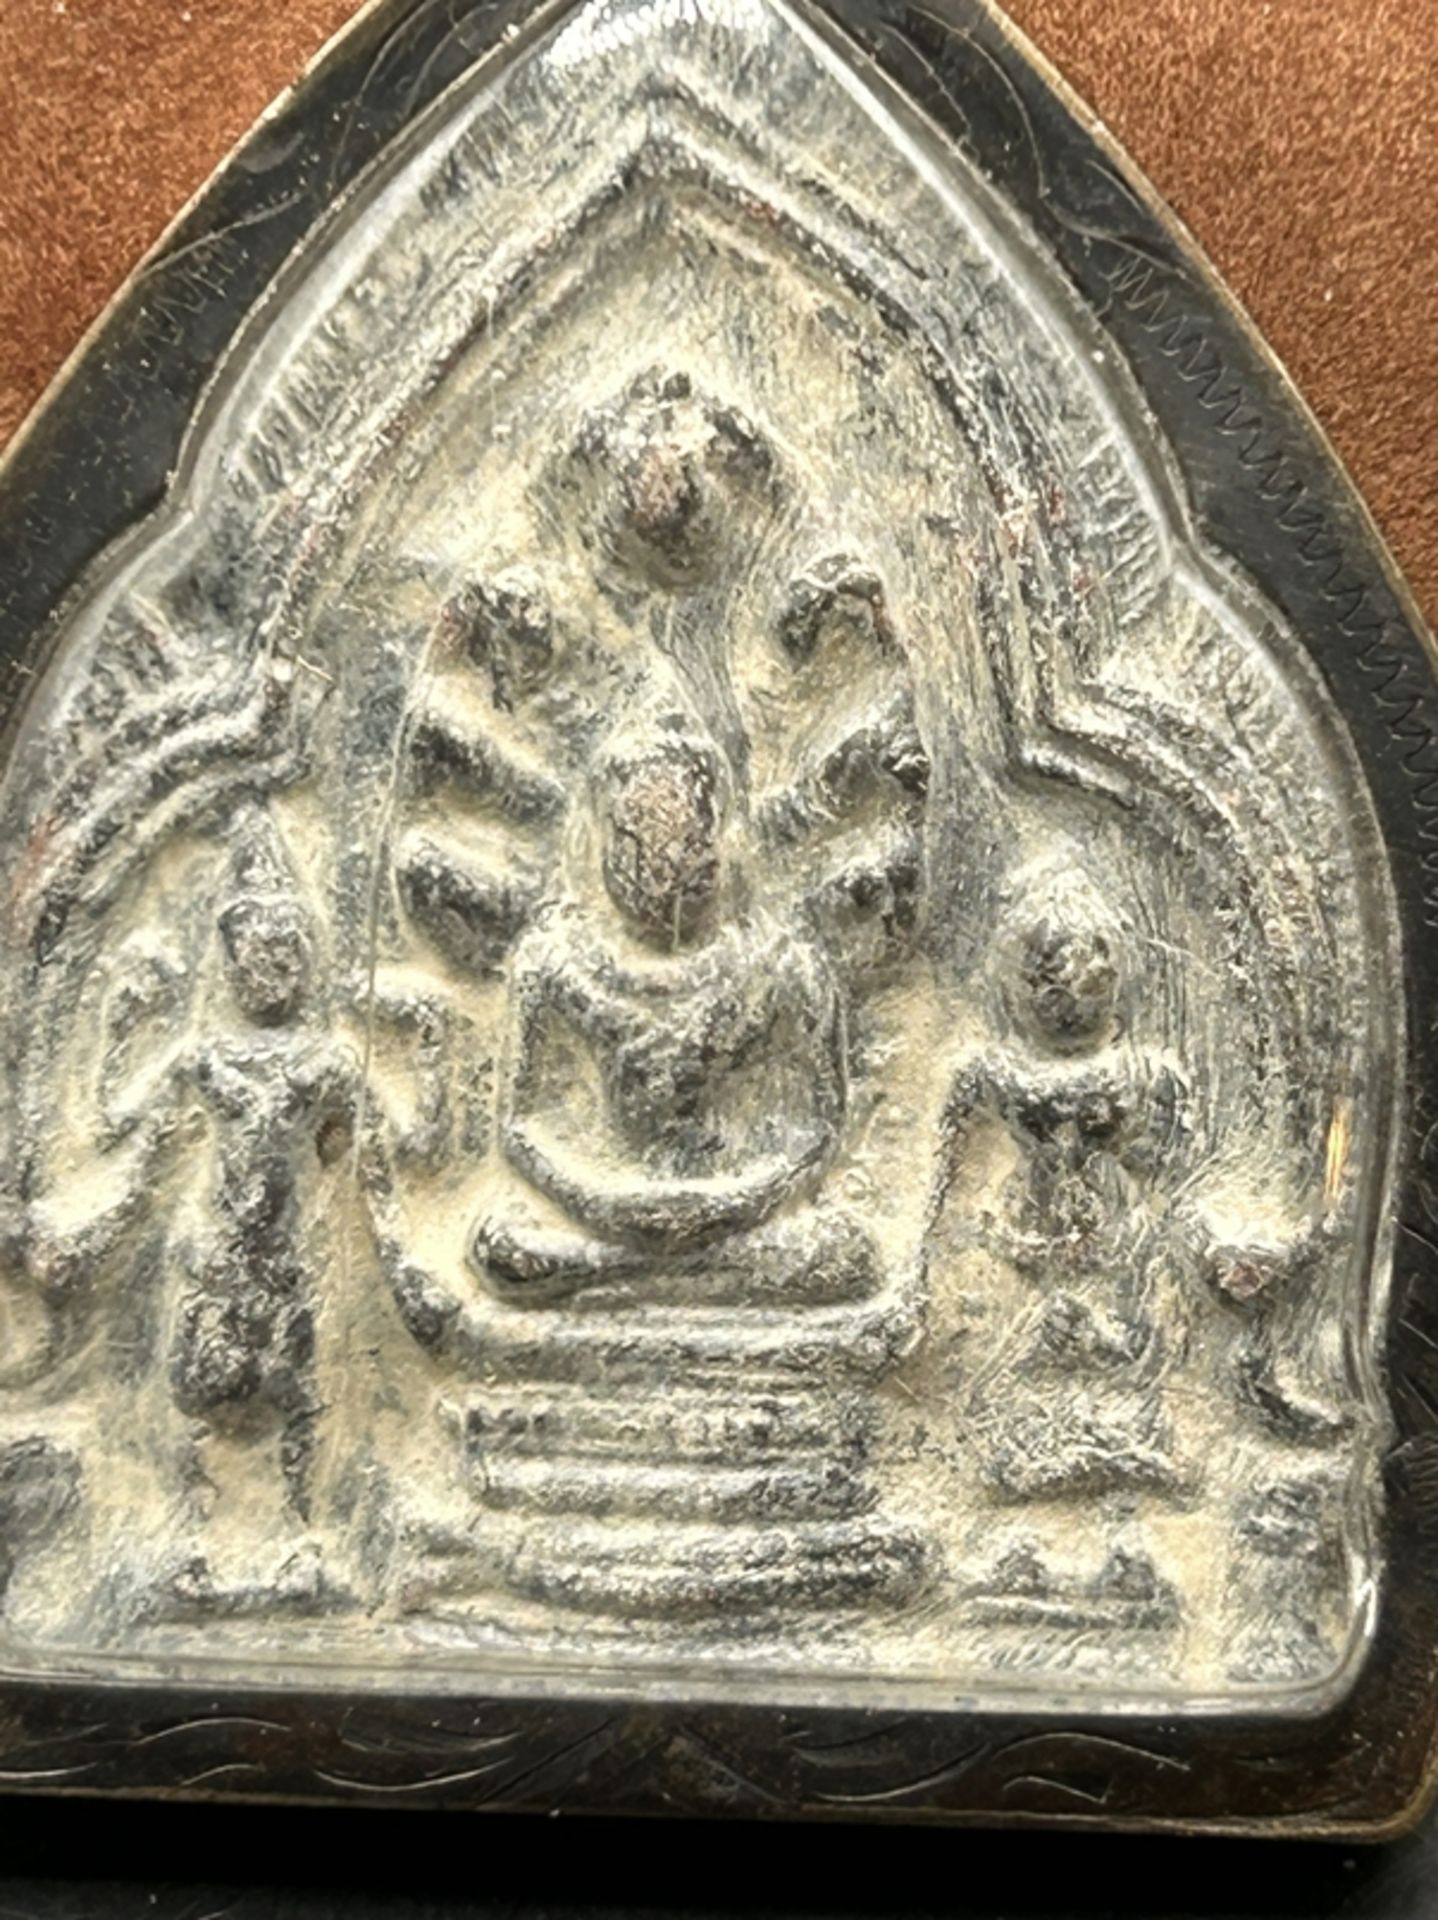 kl. Reisealtar, wohl Tibet, Kupfergehäuse, ca. 7x6 cm - Bild 2 aus 3